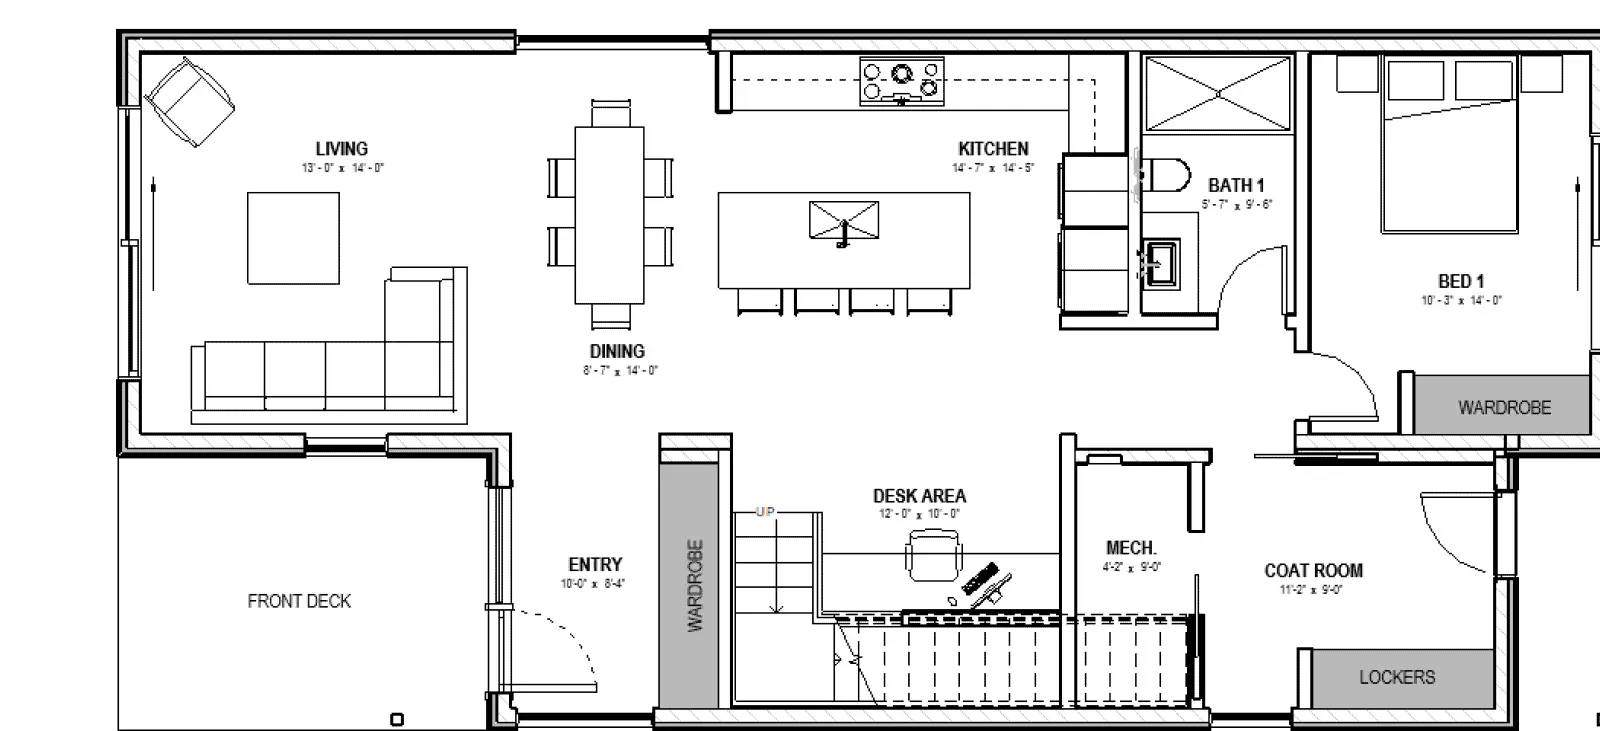 Harper prefab home first level floorplan.